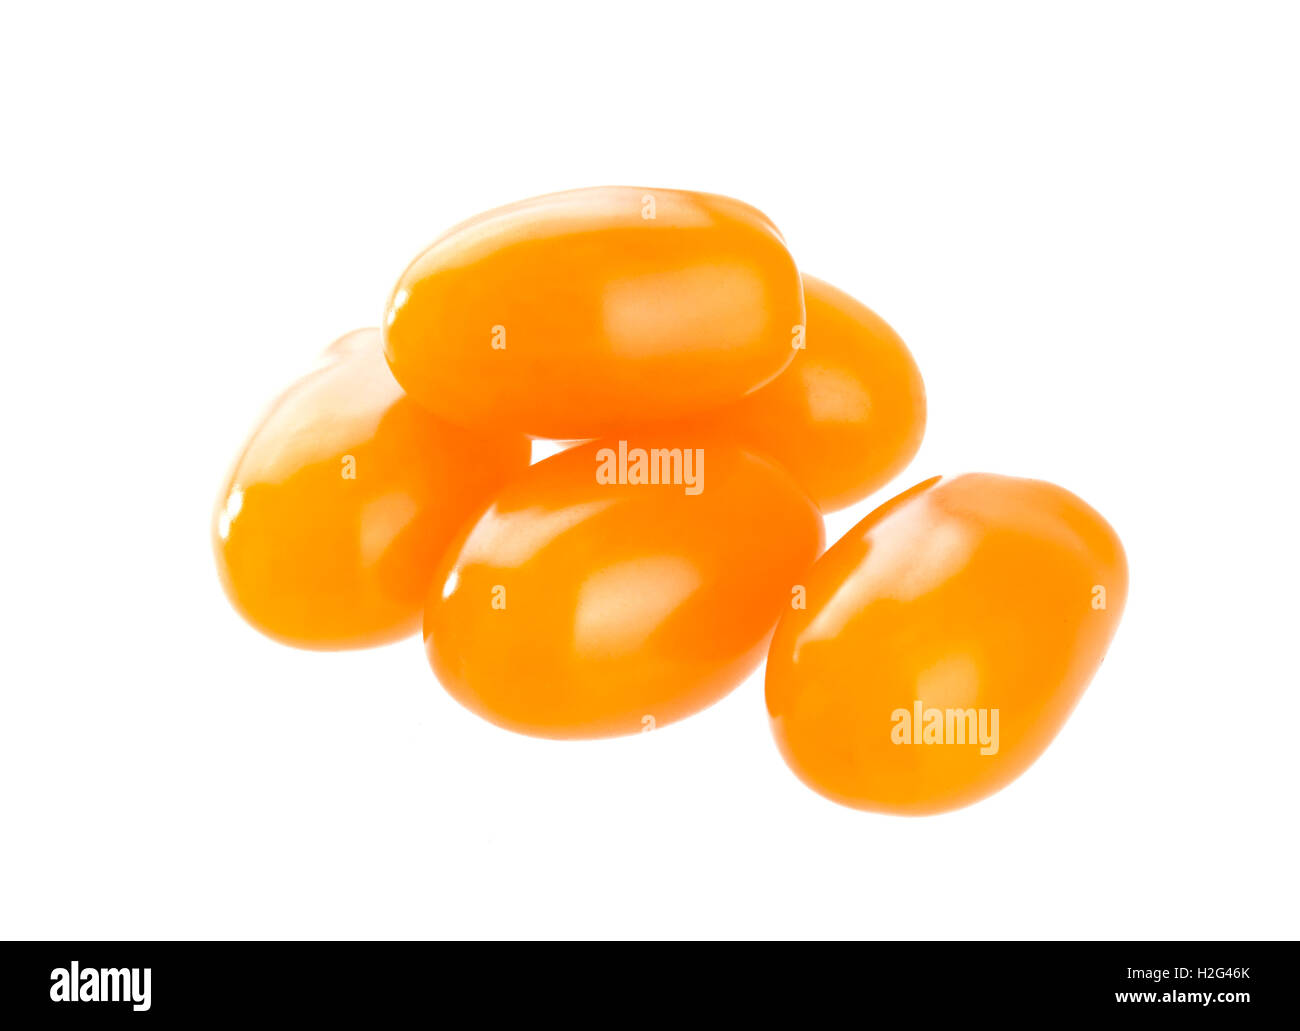 Orange cherry tomatoes isolated on white background Stock Photo